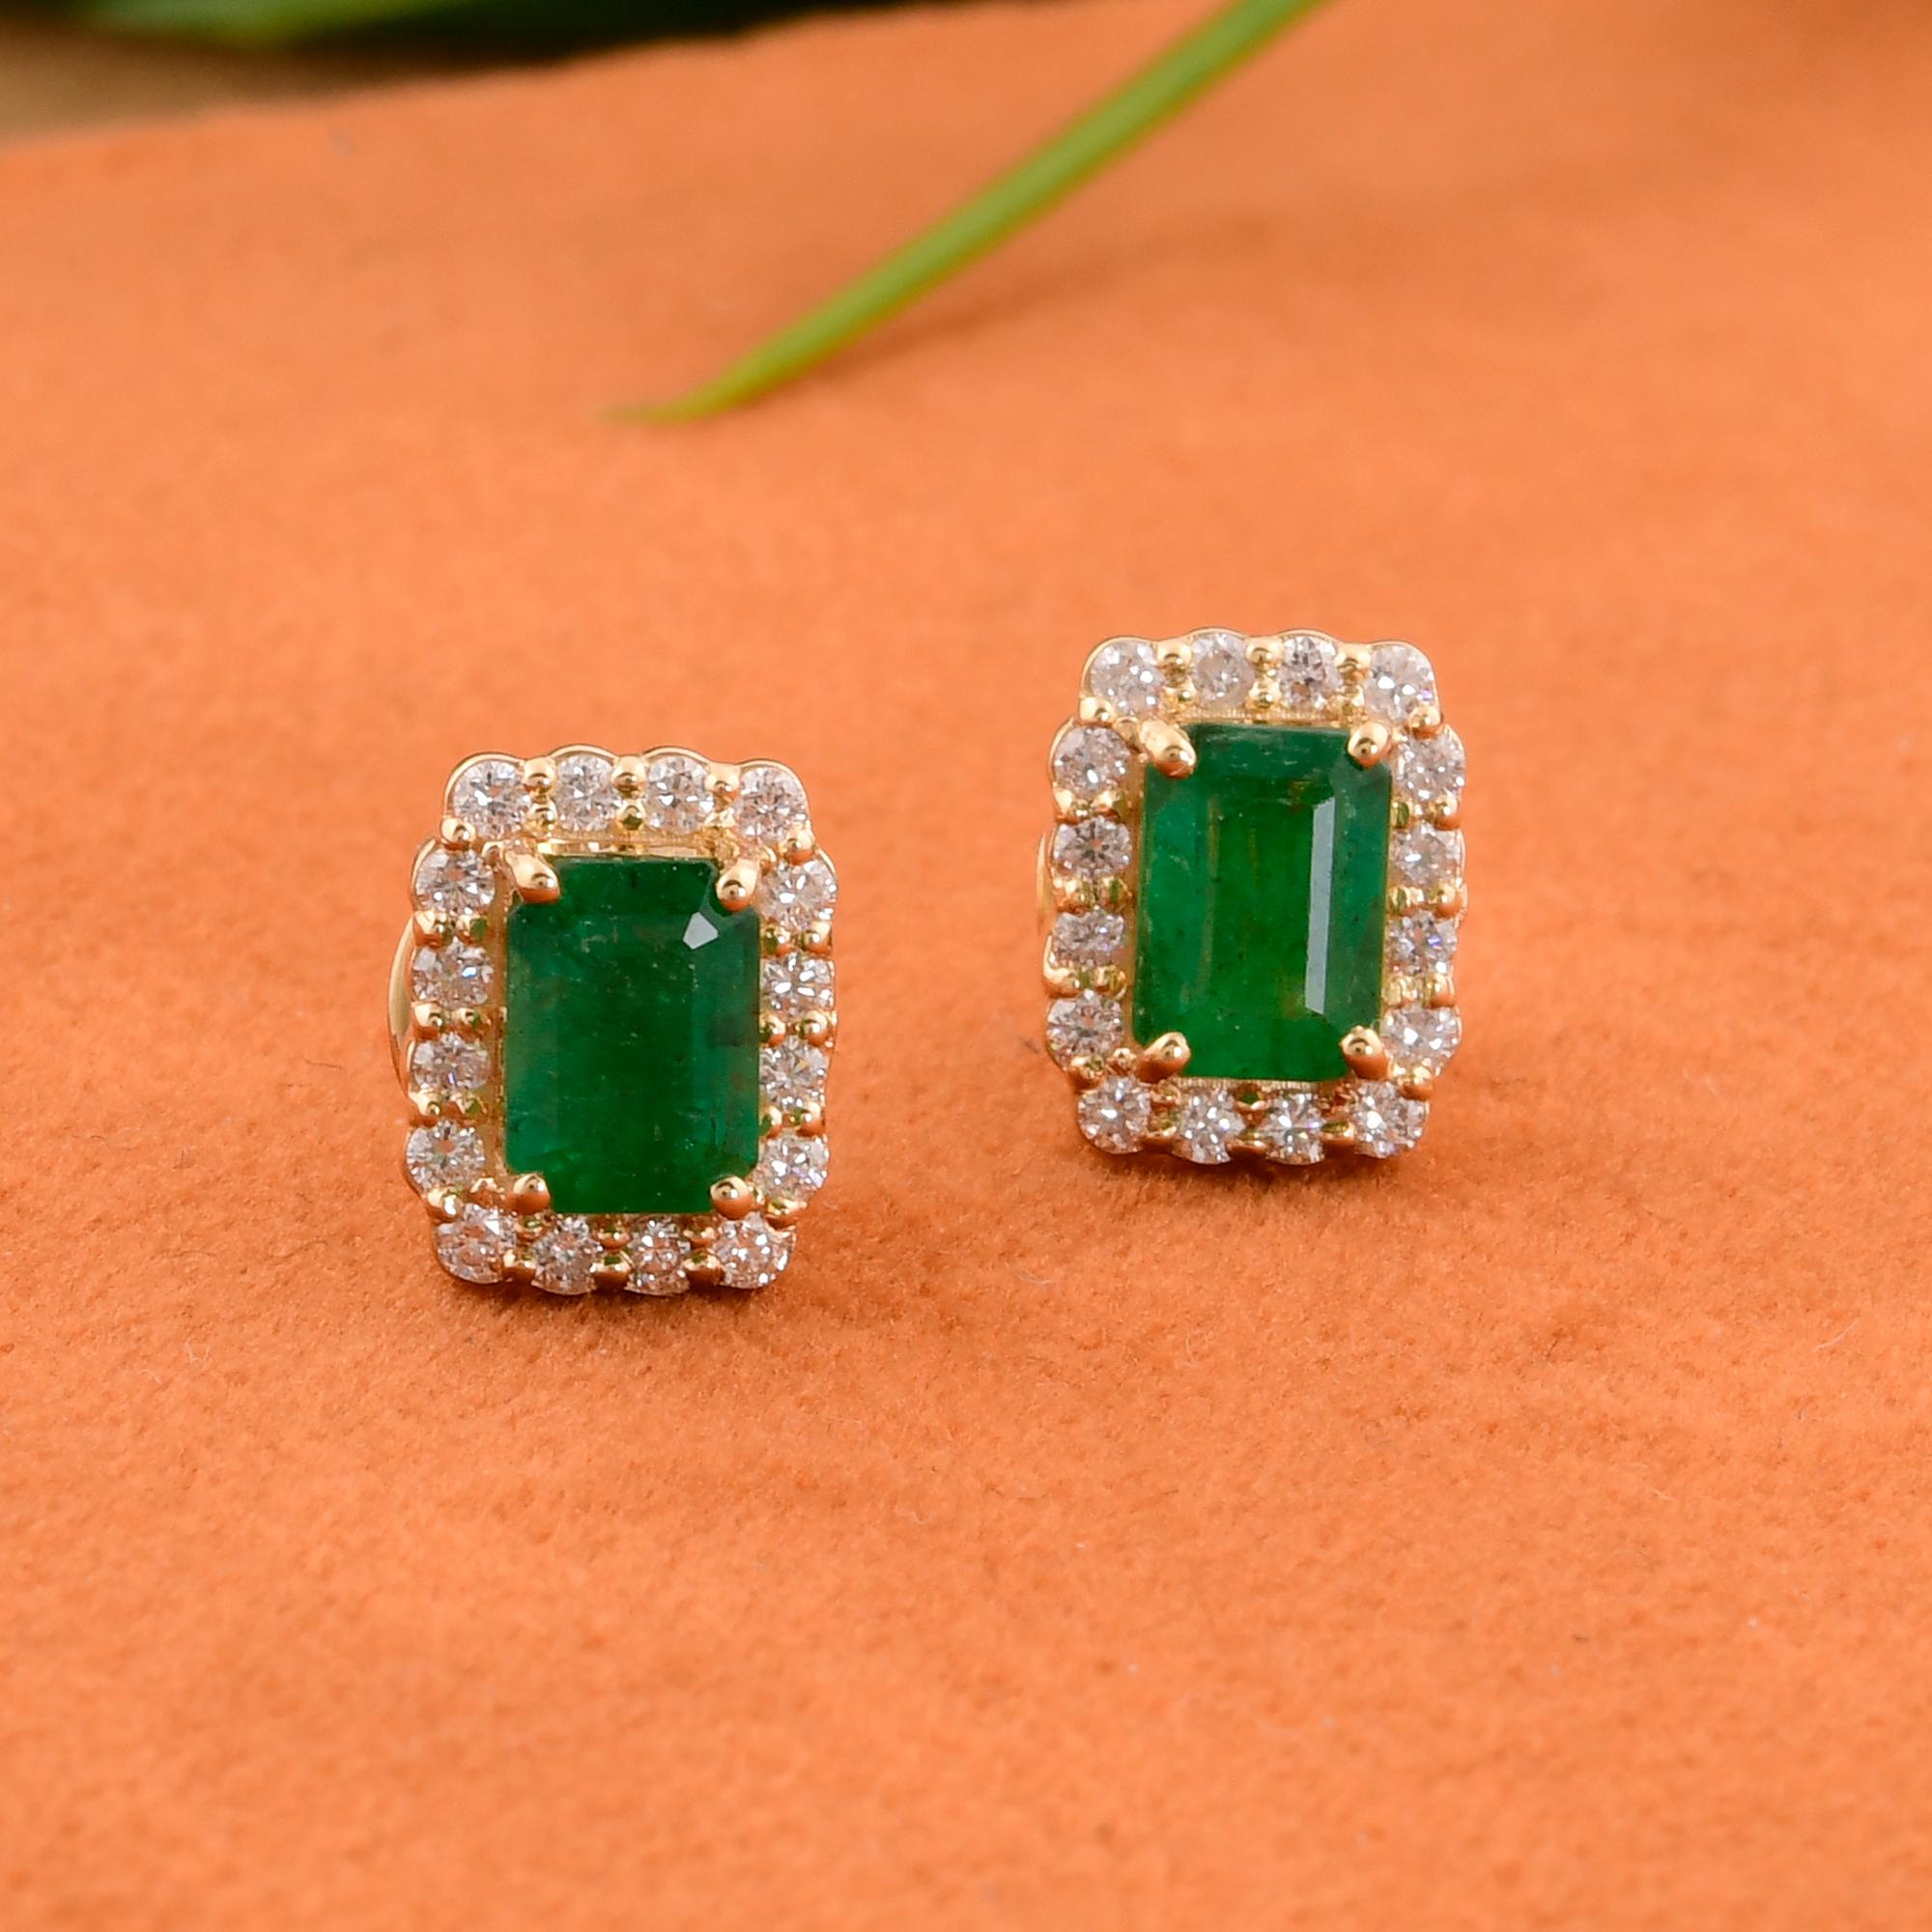 Women's Real Zambian Emerald Gemstone Stud Earrings Diamond 14 Karat White Gold Jewelry For Sale